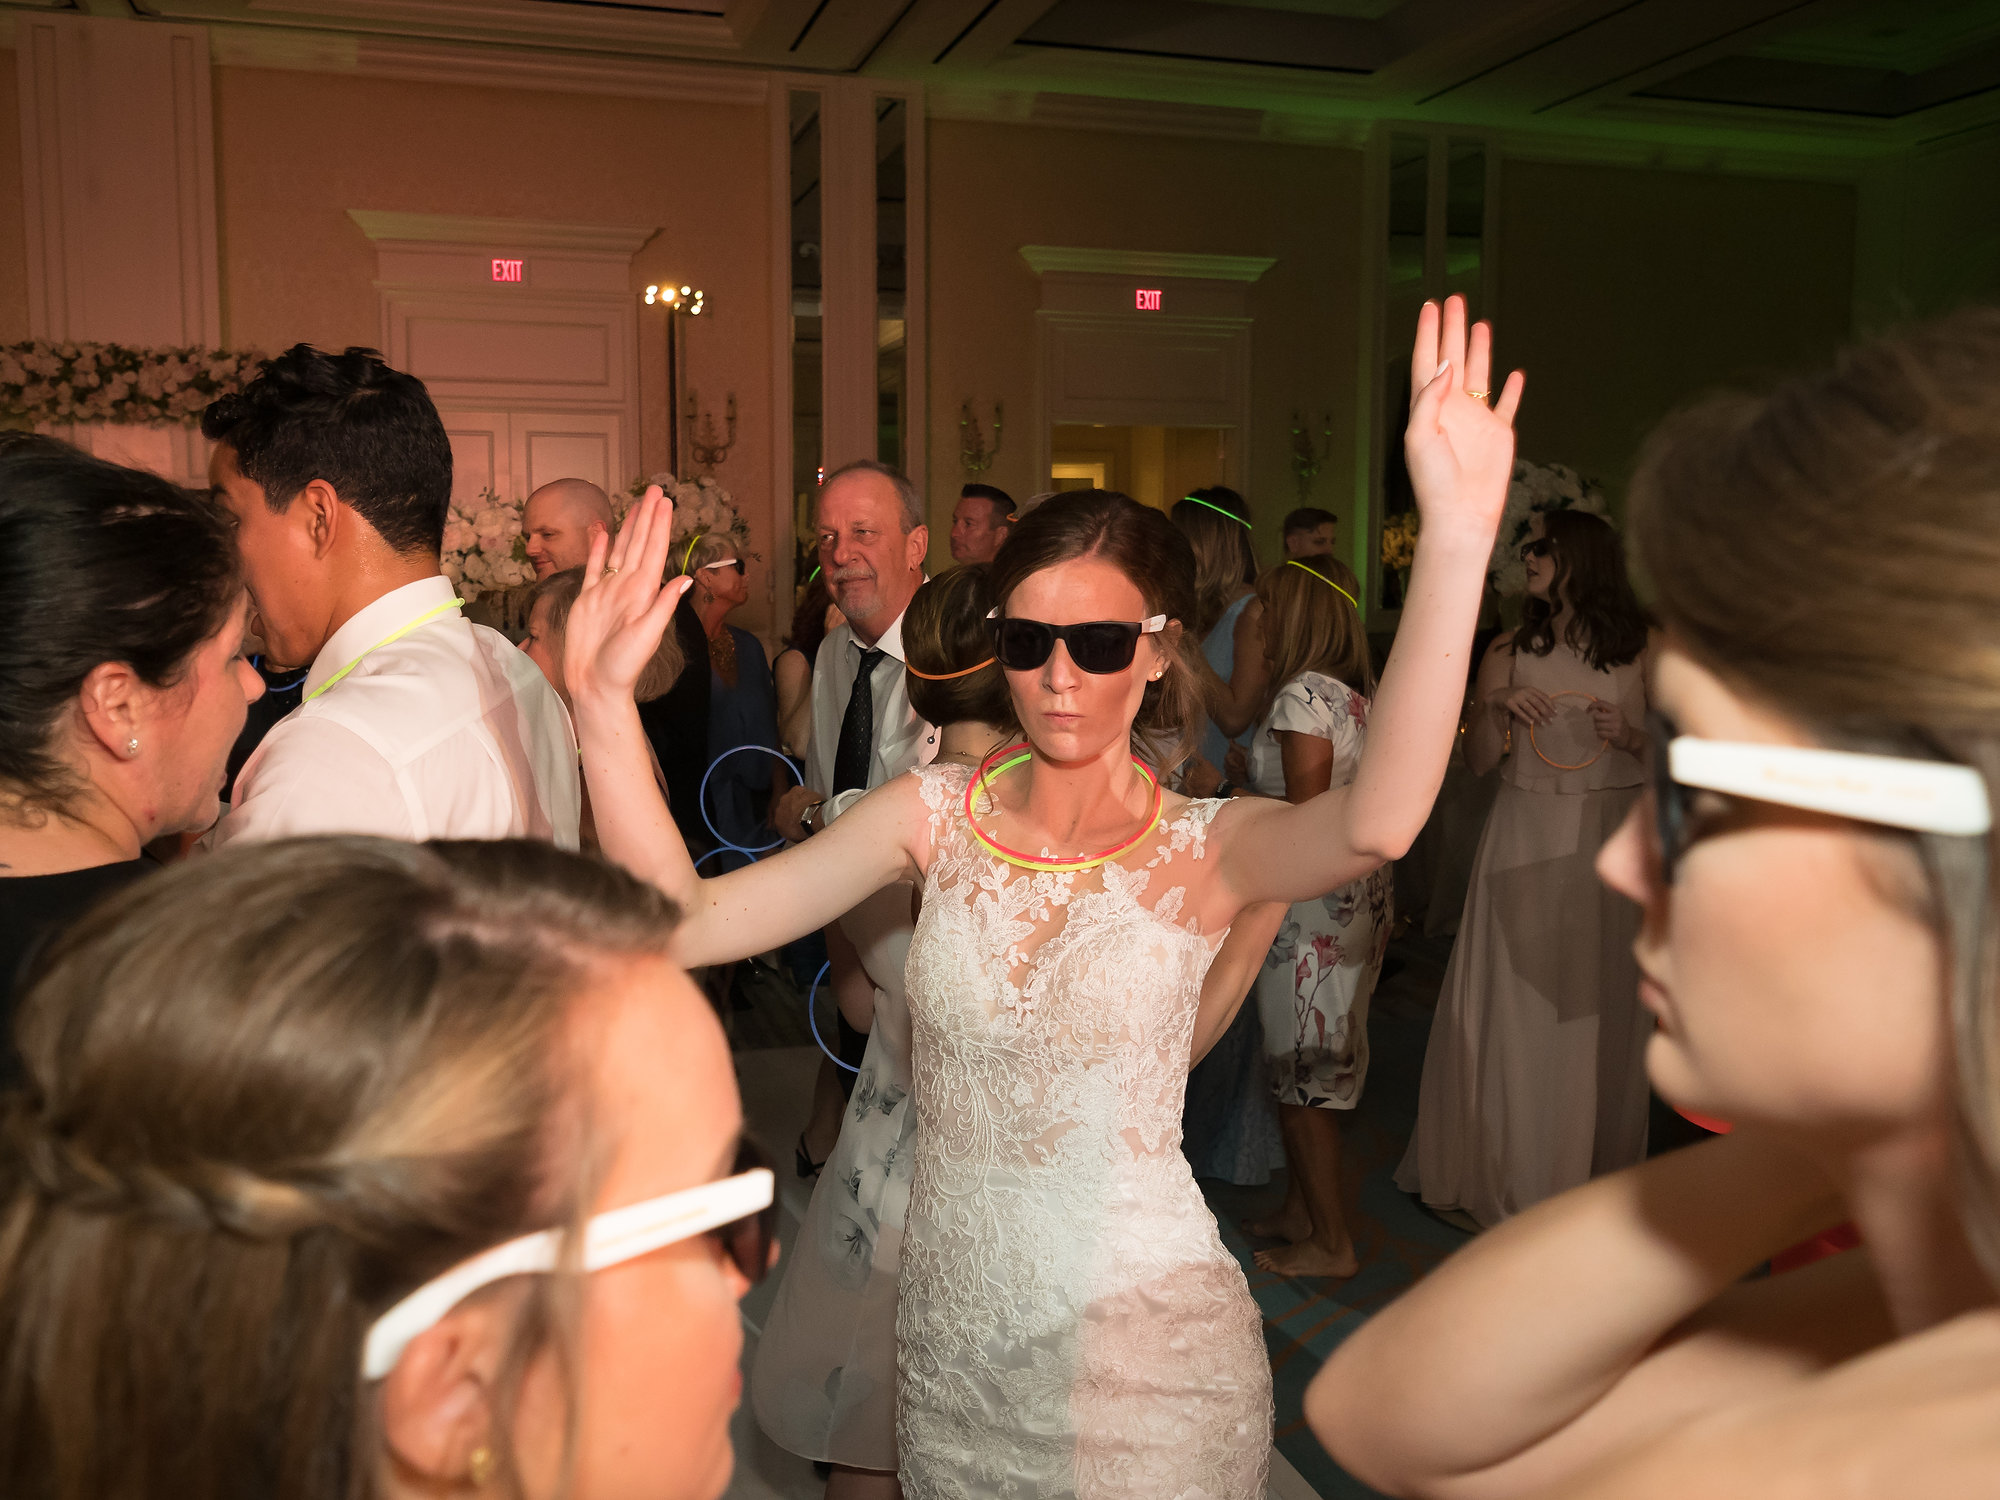 61 Sunglasses Dance Floor Wedding